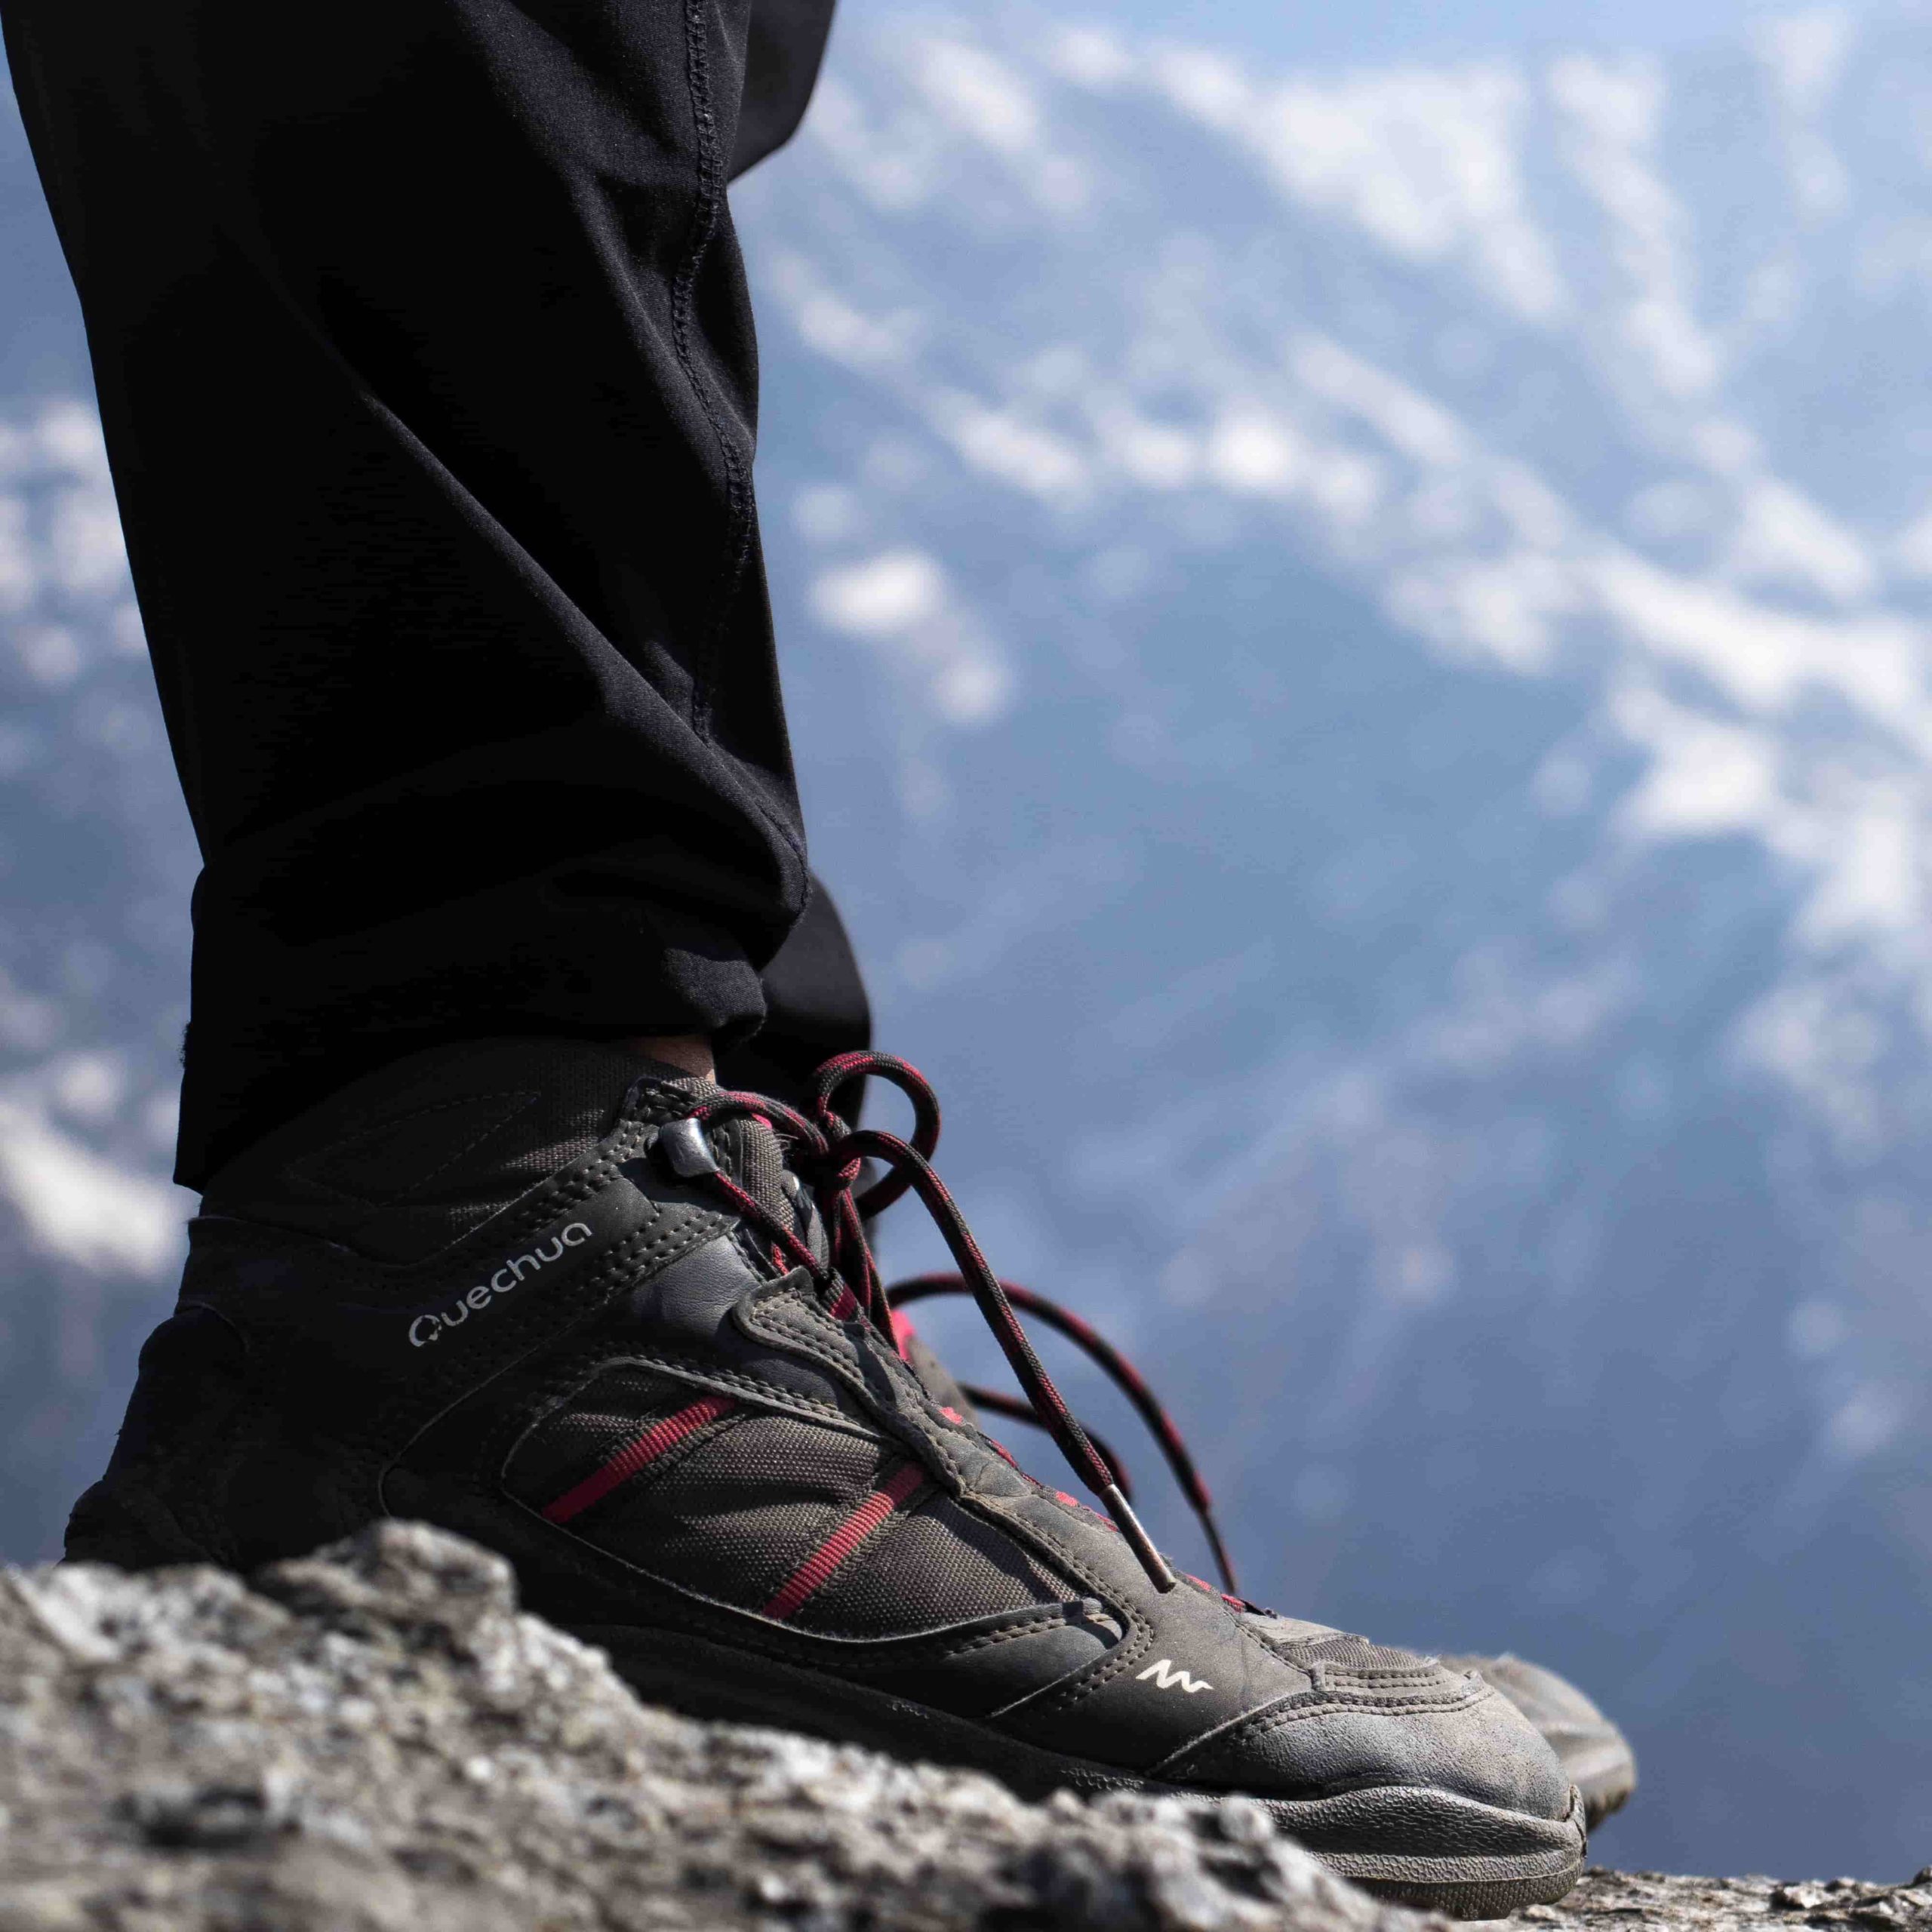 Quin és el millor calçat per a fer trekking i quines característiques té